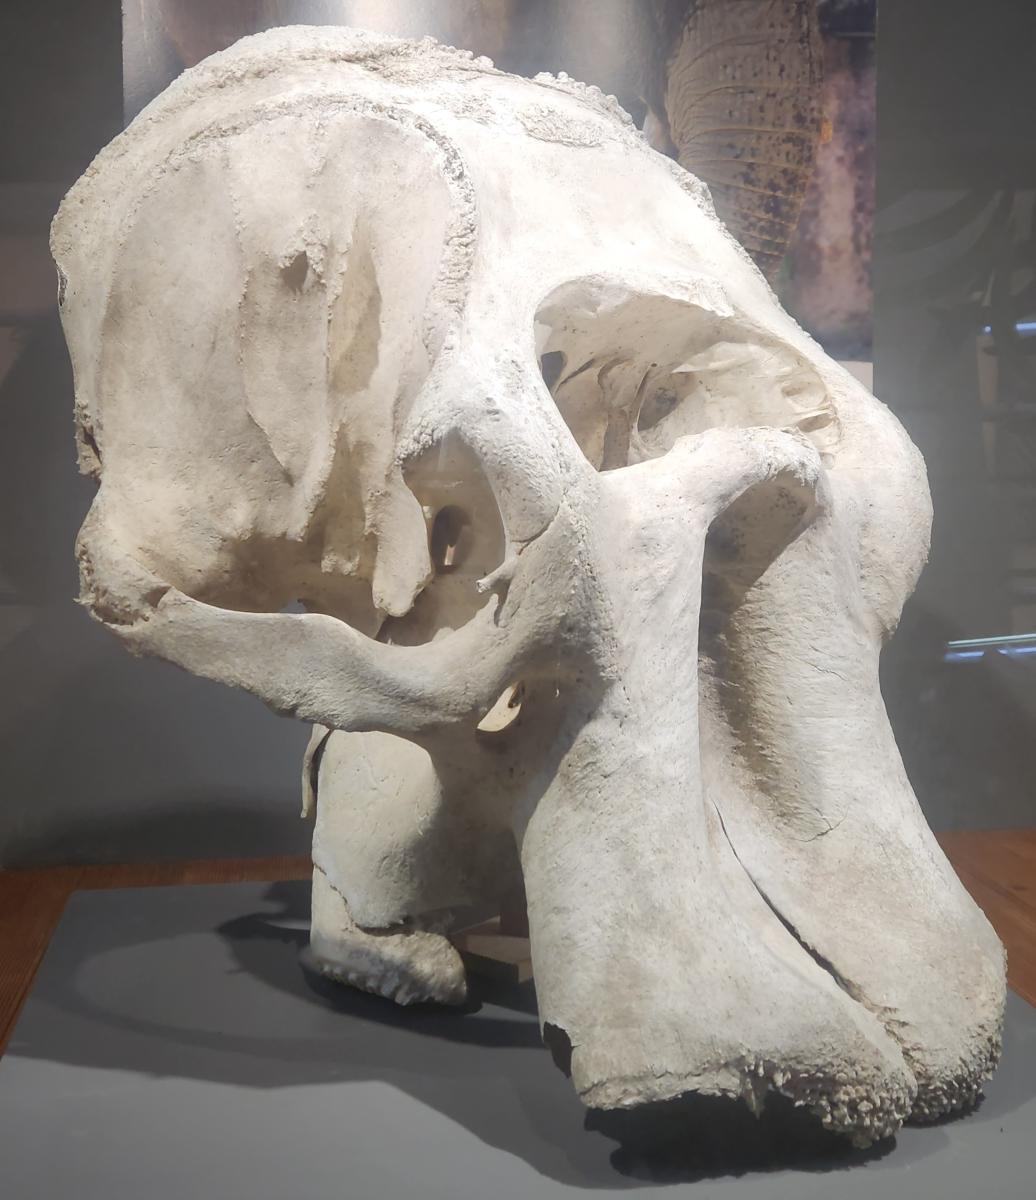 아프리카코끼리 두개골.jpg